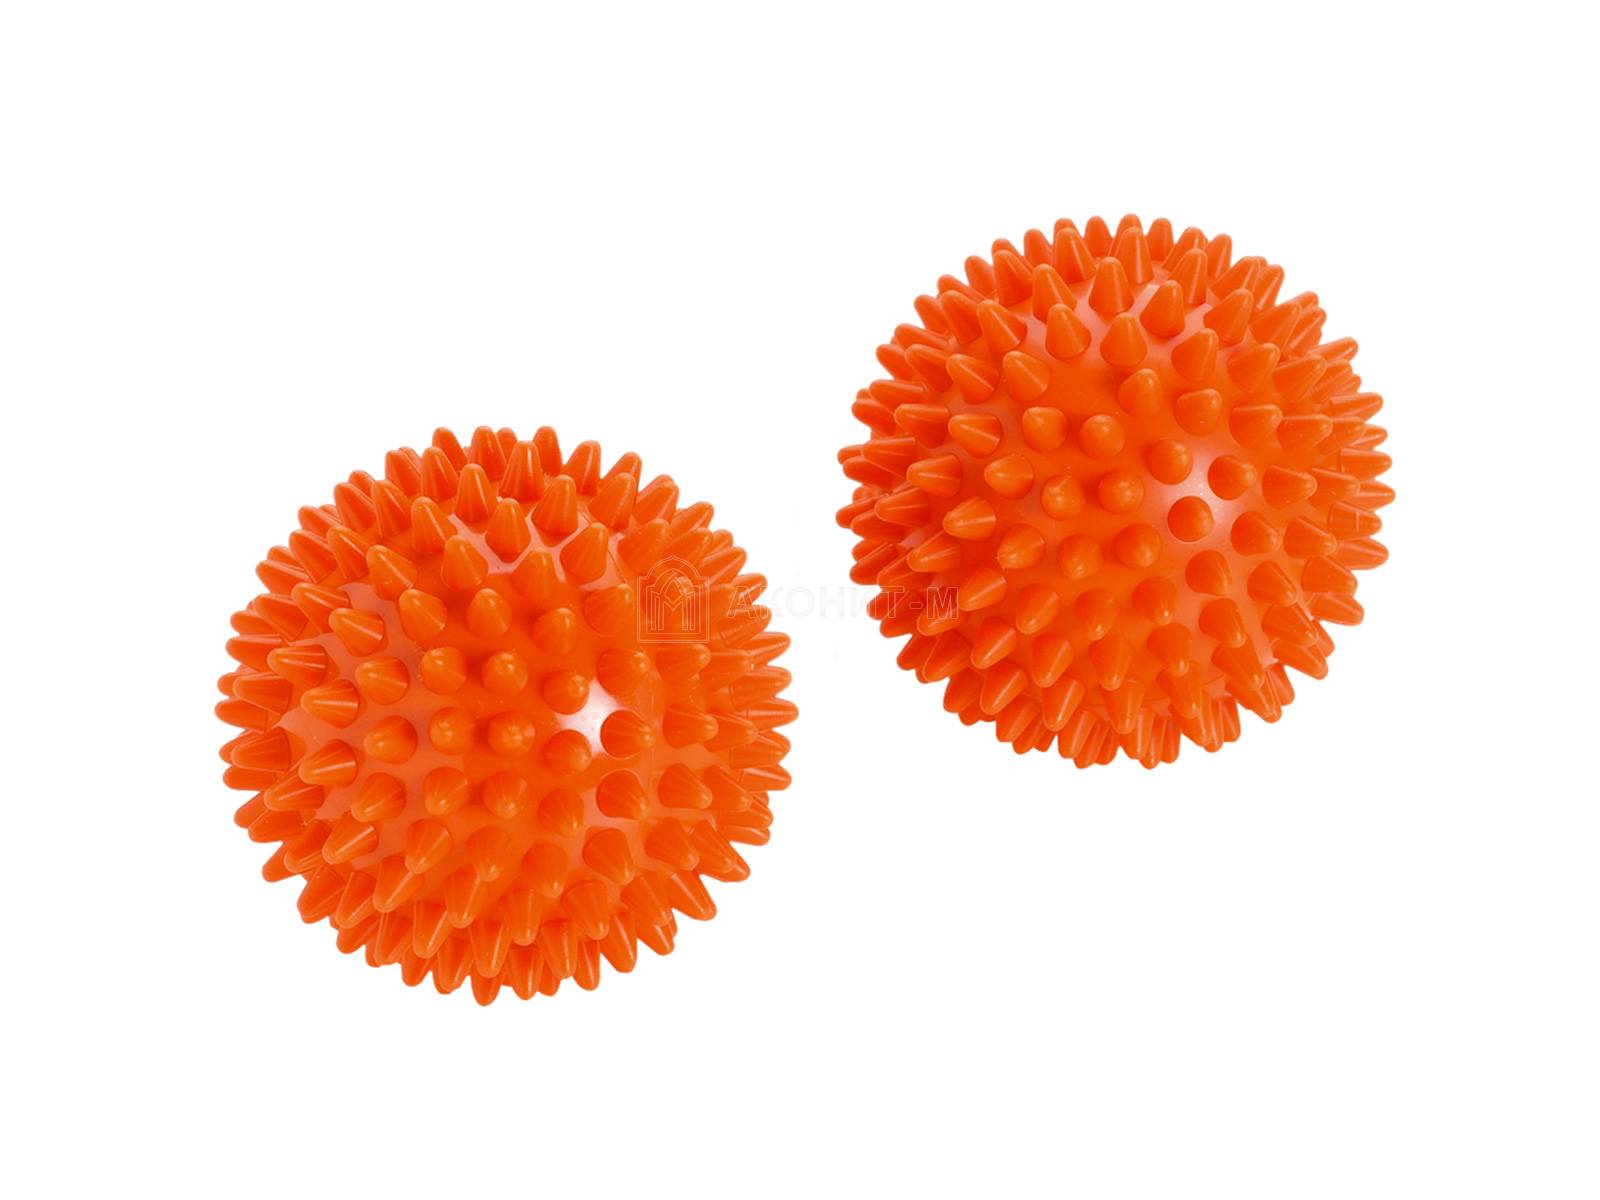 Массажный мяч мягкий "Бьюти" (оранжевый, диам. 8 см) набор 2 шт.